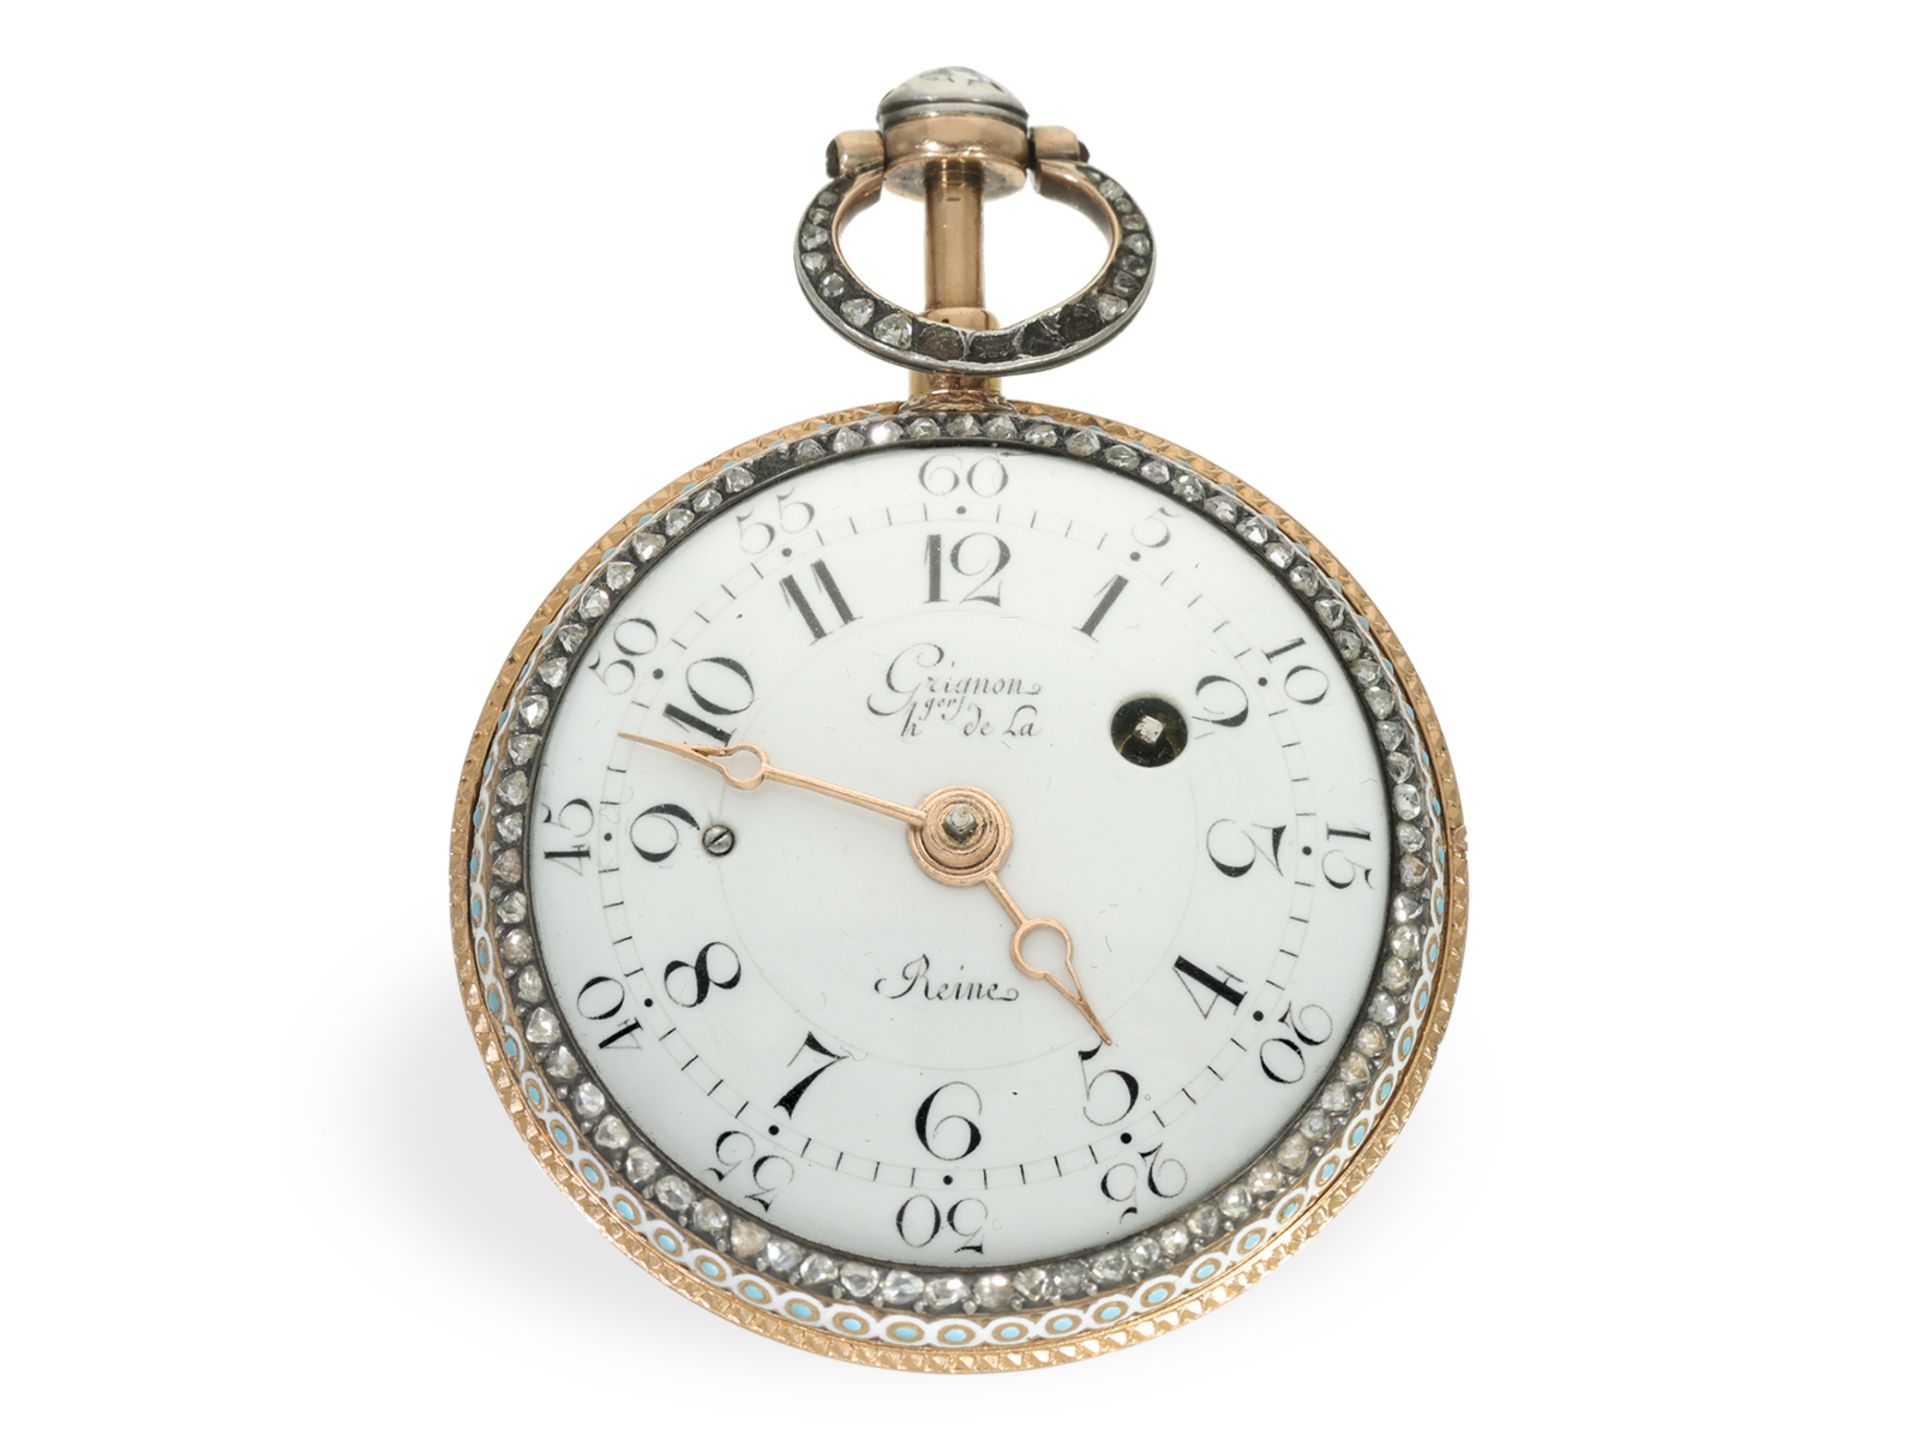 Taschenuhr: museale Gold/Emaille Spindeluhr mit Repetition und Chatelaine, königl. Uhrmacher Grignon - Bild 4 aus 8